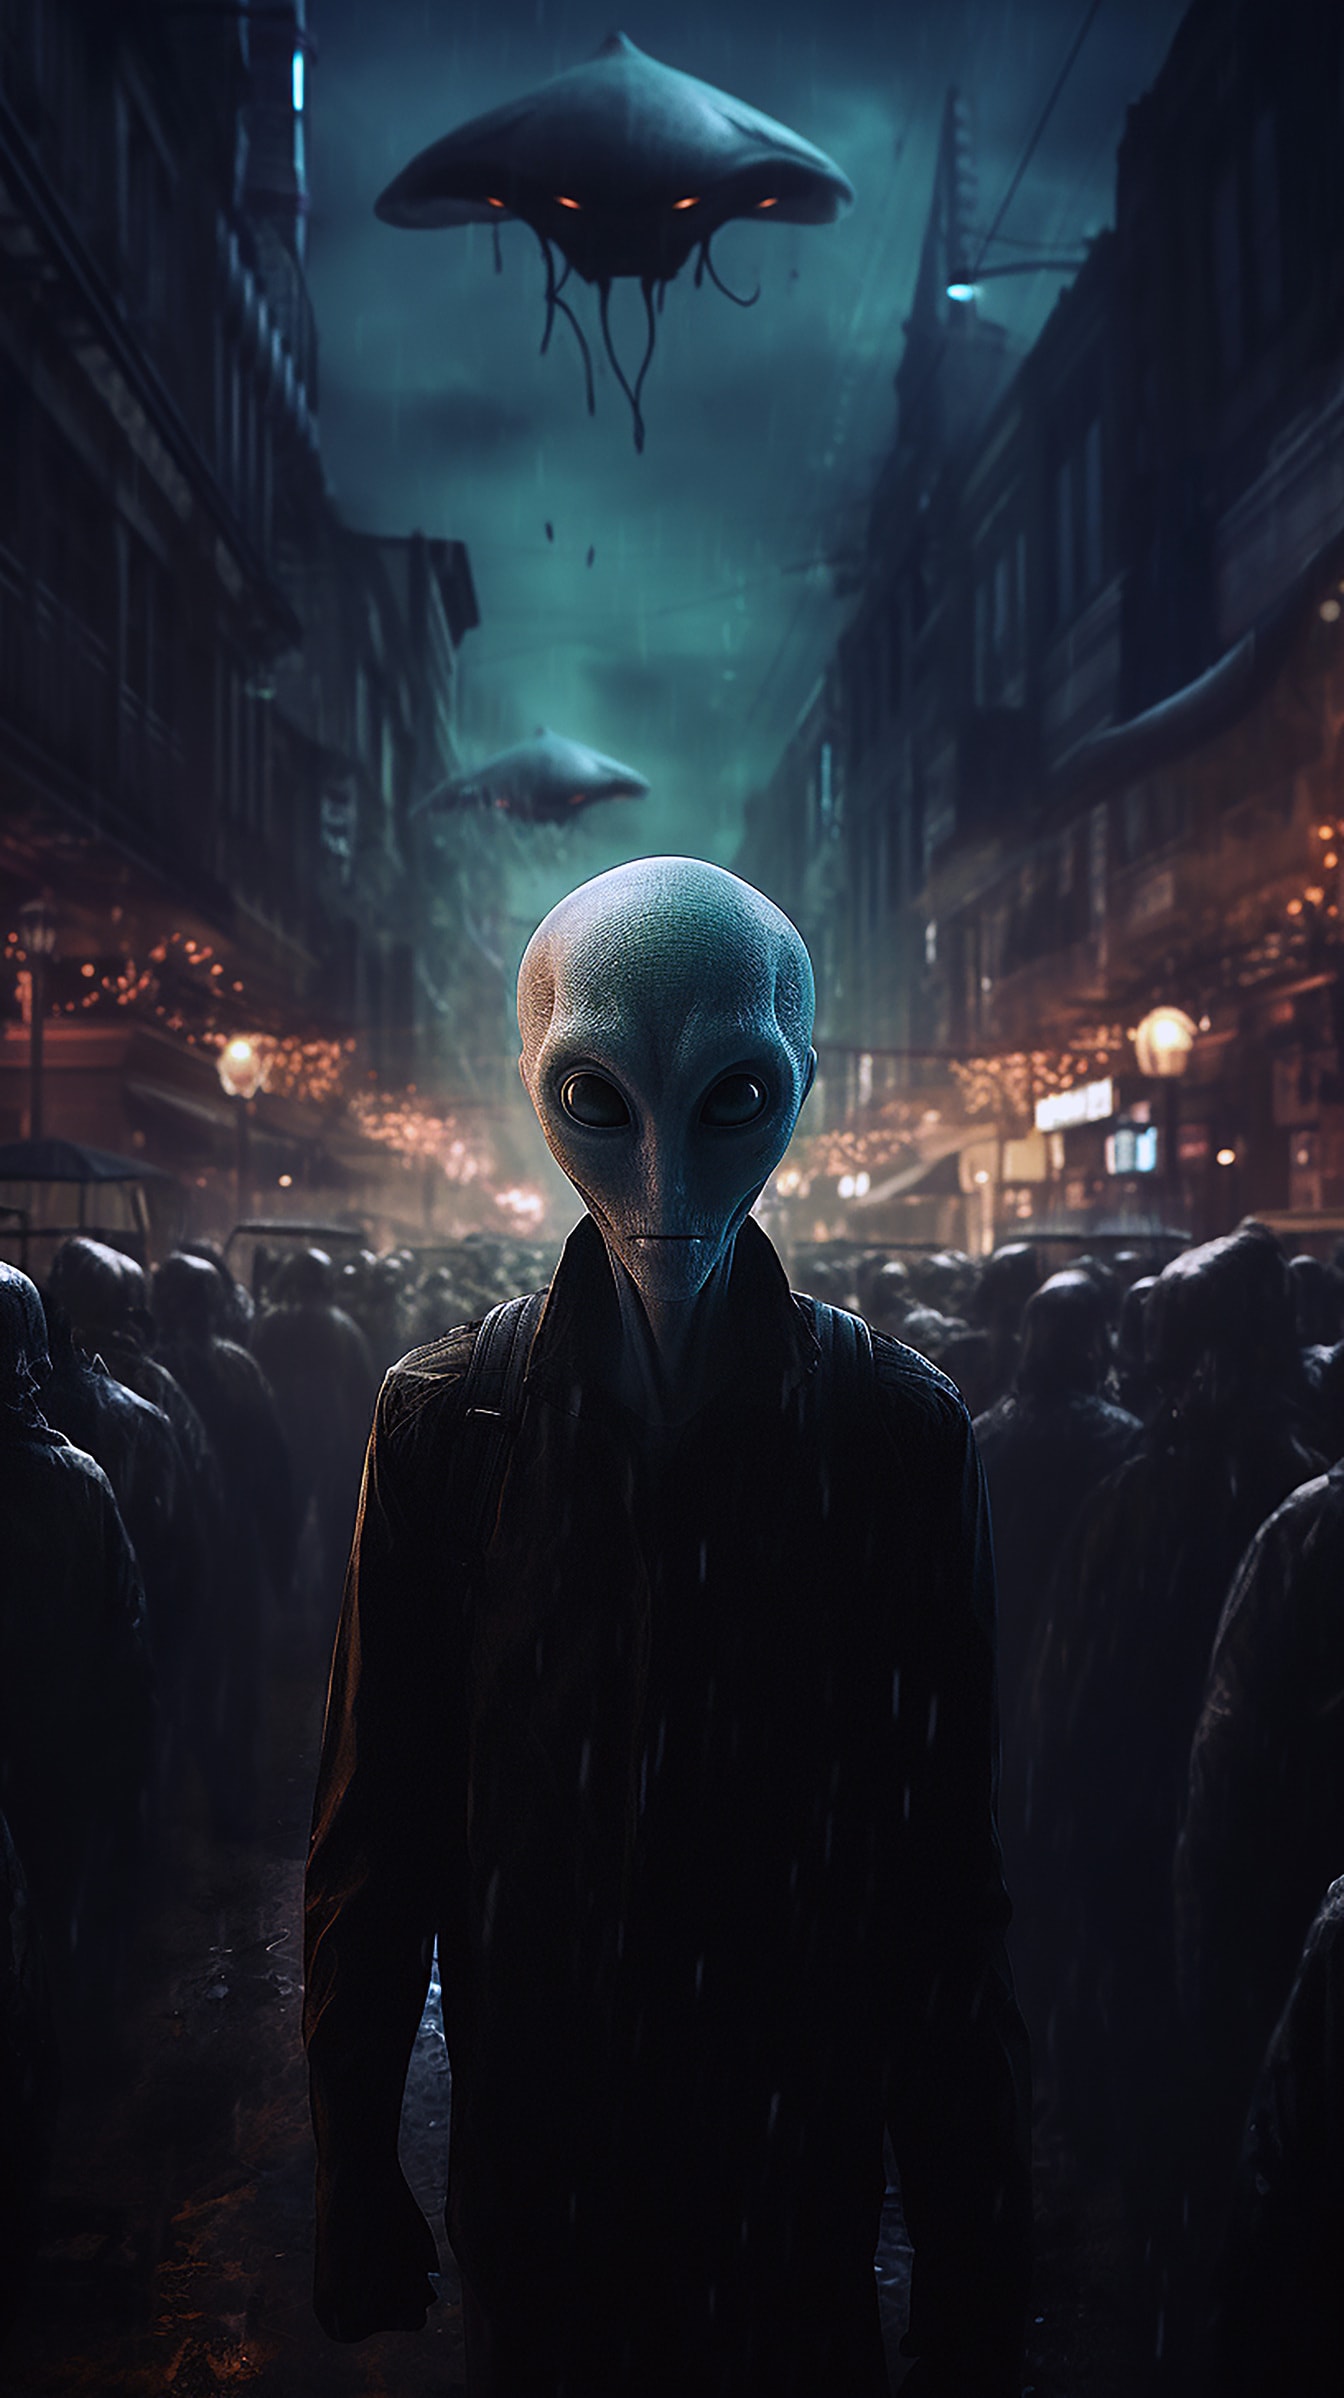 Ανθρωποειδής εξωγήινος στο δρόμο τη νύχτα φαντασία τρόμου εικονογράφηση